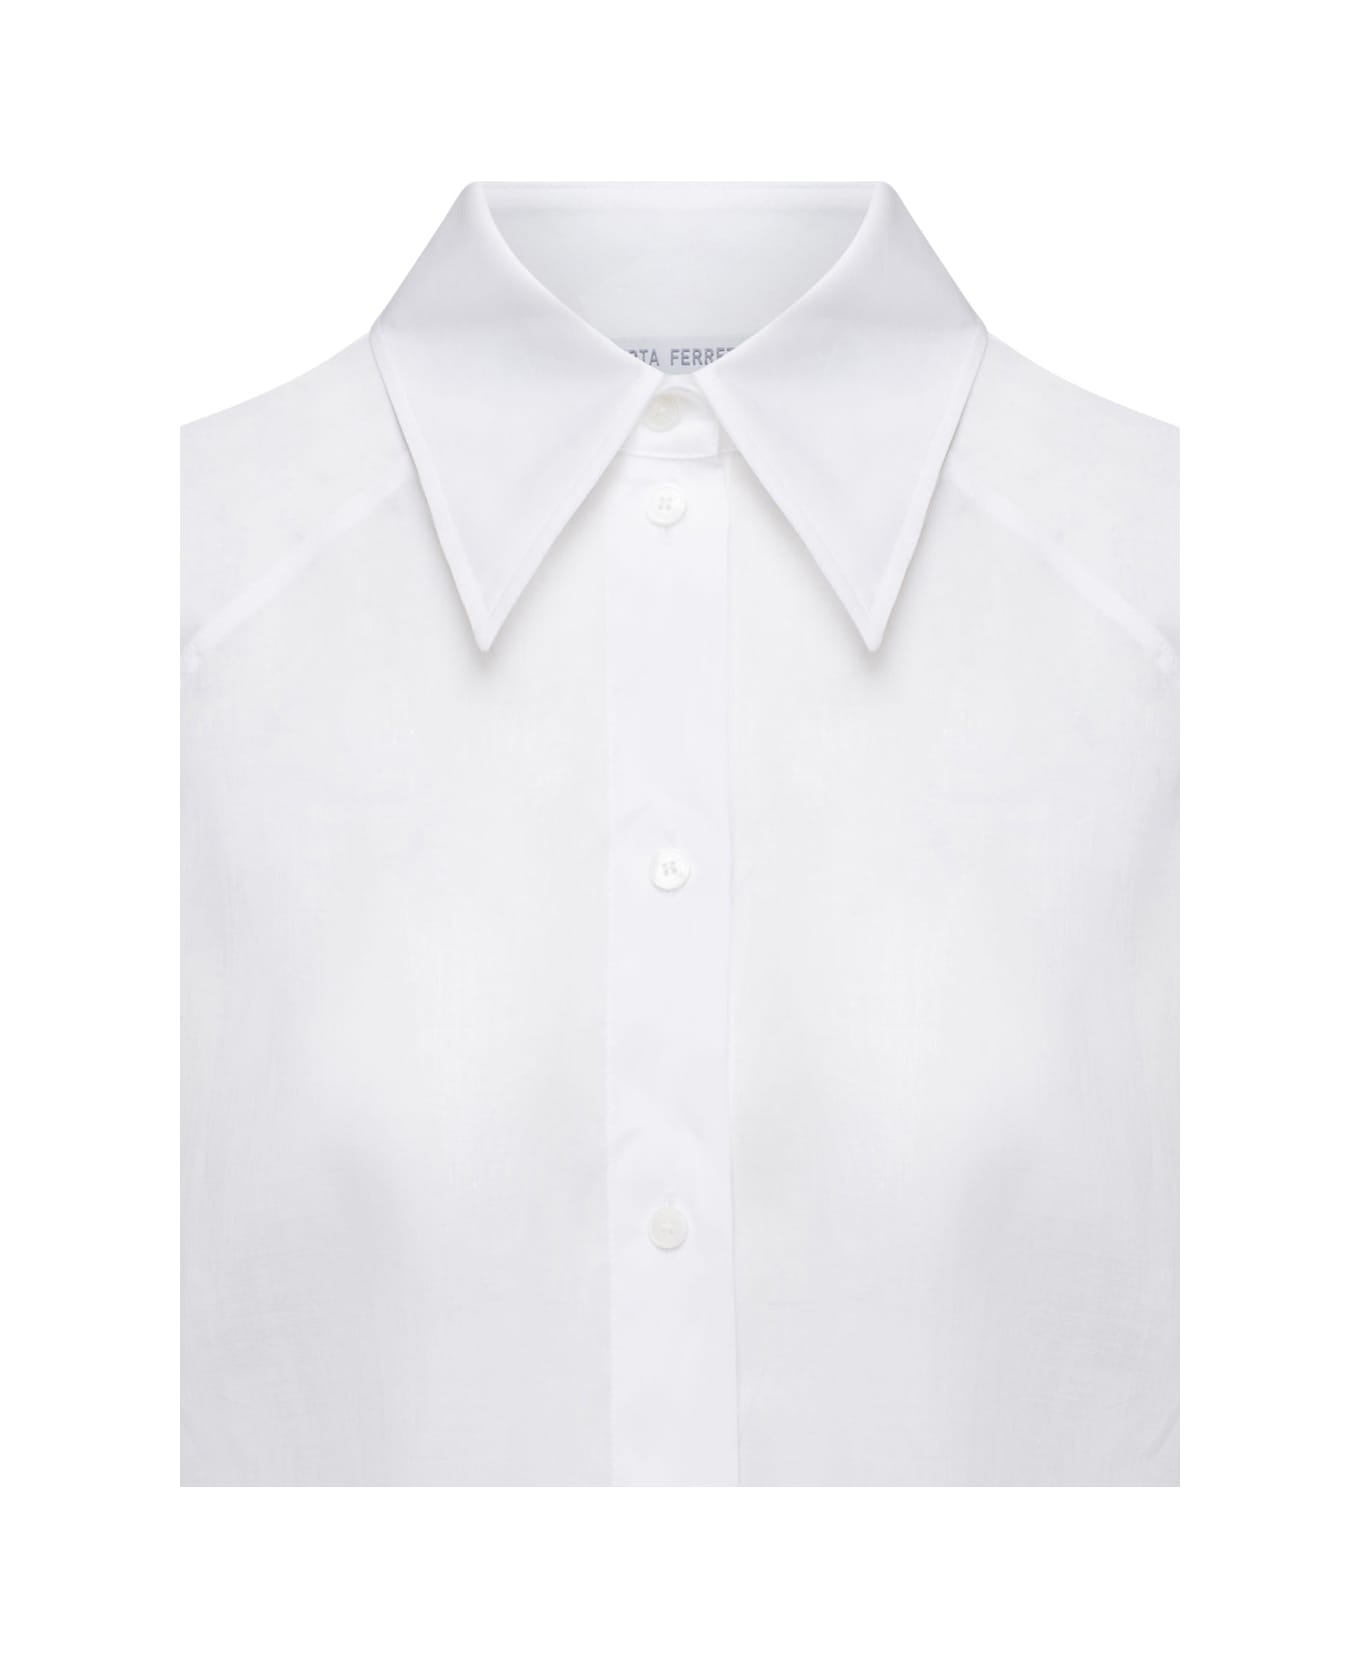 Alberta Ferretti White Maxi Shirt In Cotton Organza Woman - White